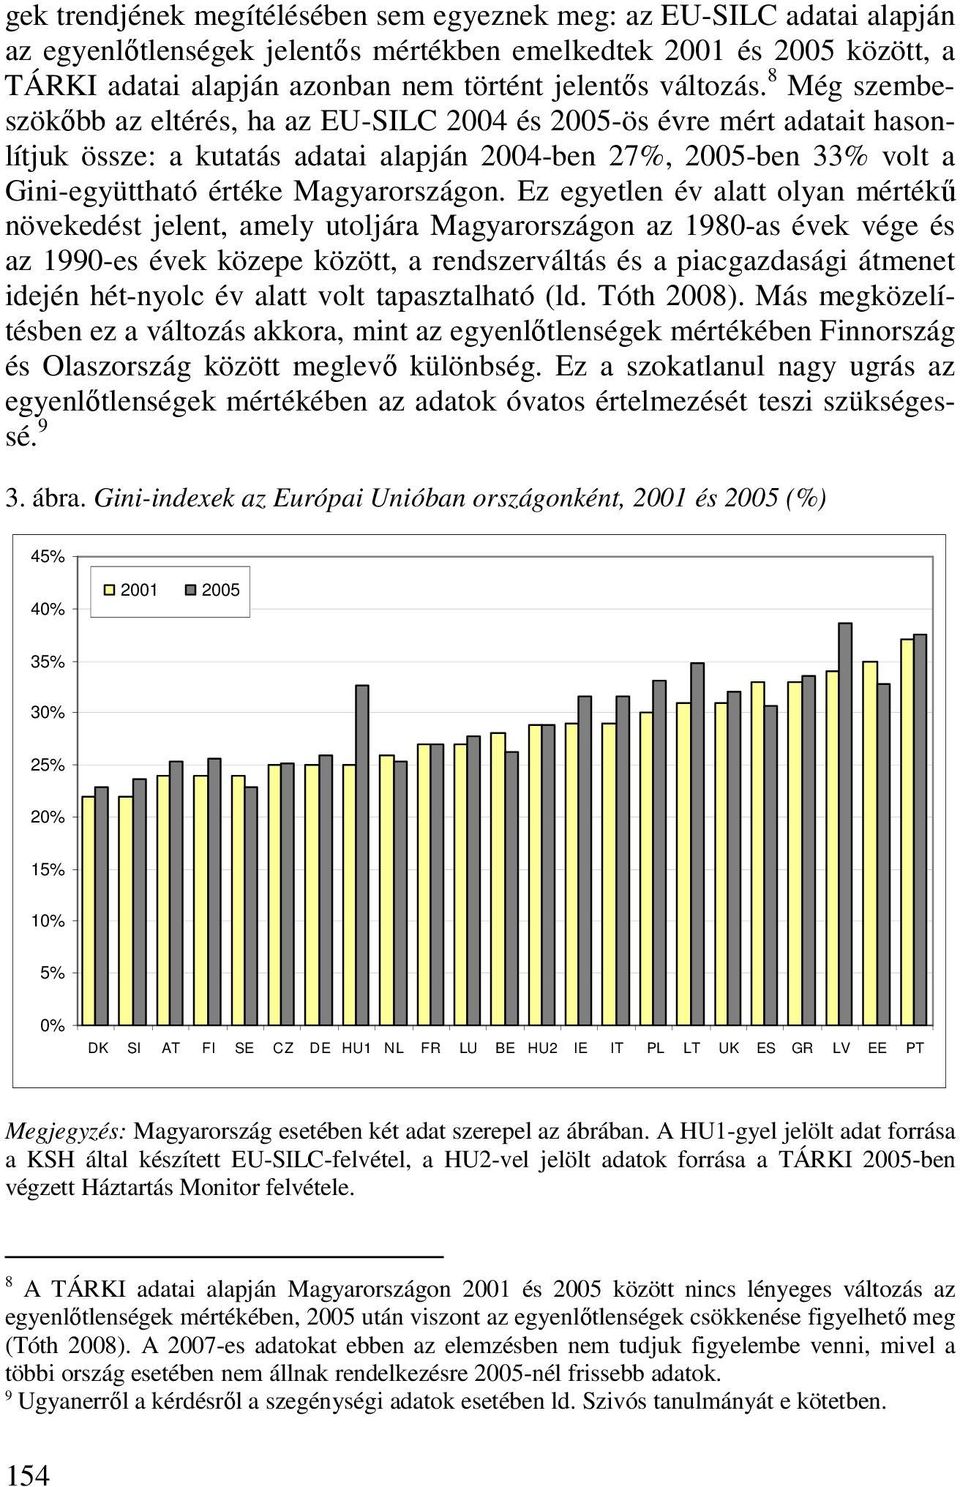 8 Még szembeszökıbb az eltérés, ha az EU-SILC 2004 és 2005-ös évre mért adatait hasonlítjuk össze: a kutatás adatai alapján 2004-ben 27%, 2005-ben 33% volt a Gini-együttható értéke Magyarországon.